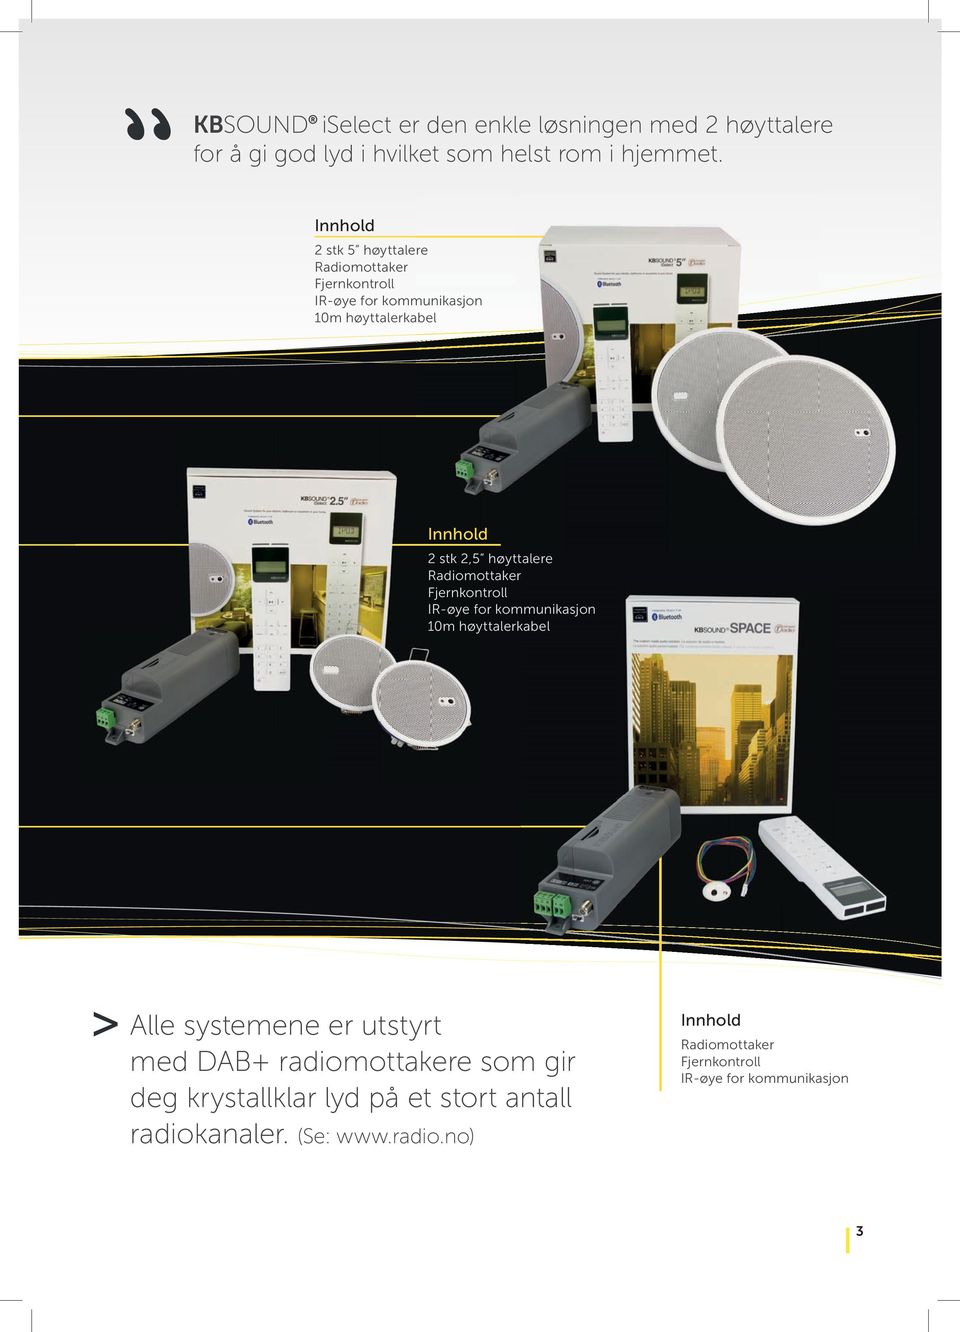 høyttalere Radiomottaker Fjernkontroll IR-øye for kommunikasjon 10m høyttalerkabel > Alle systemene er utstyrt med DAB+